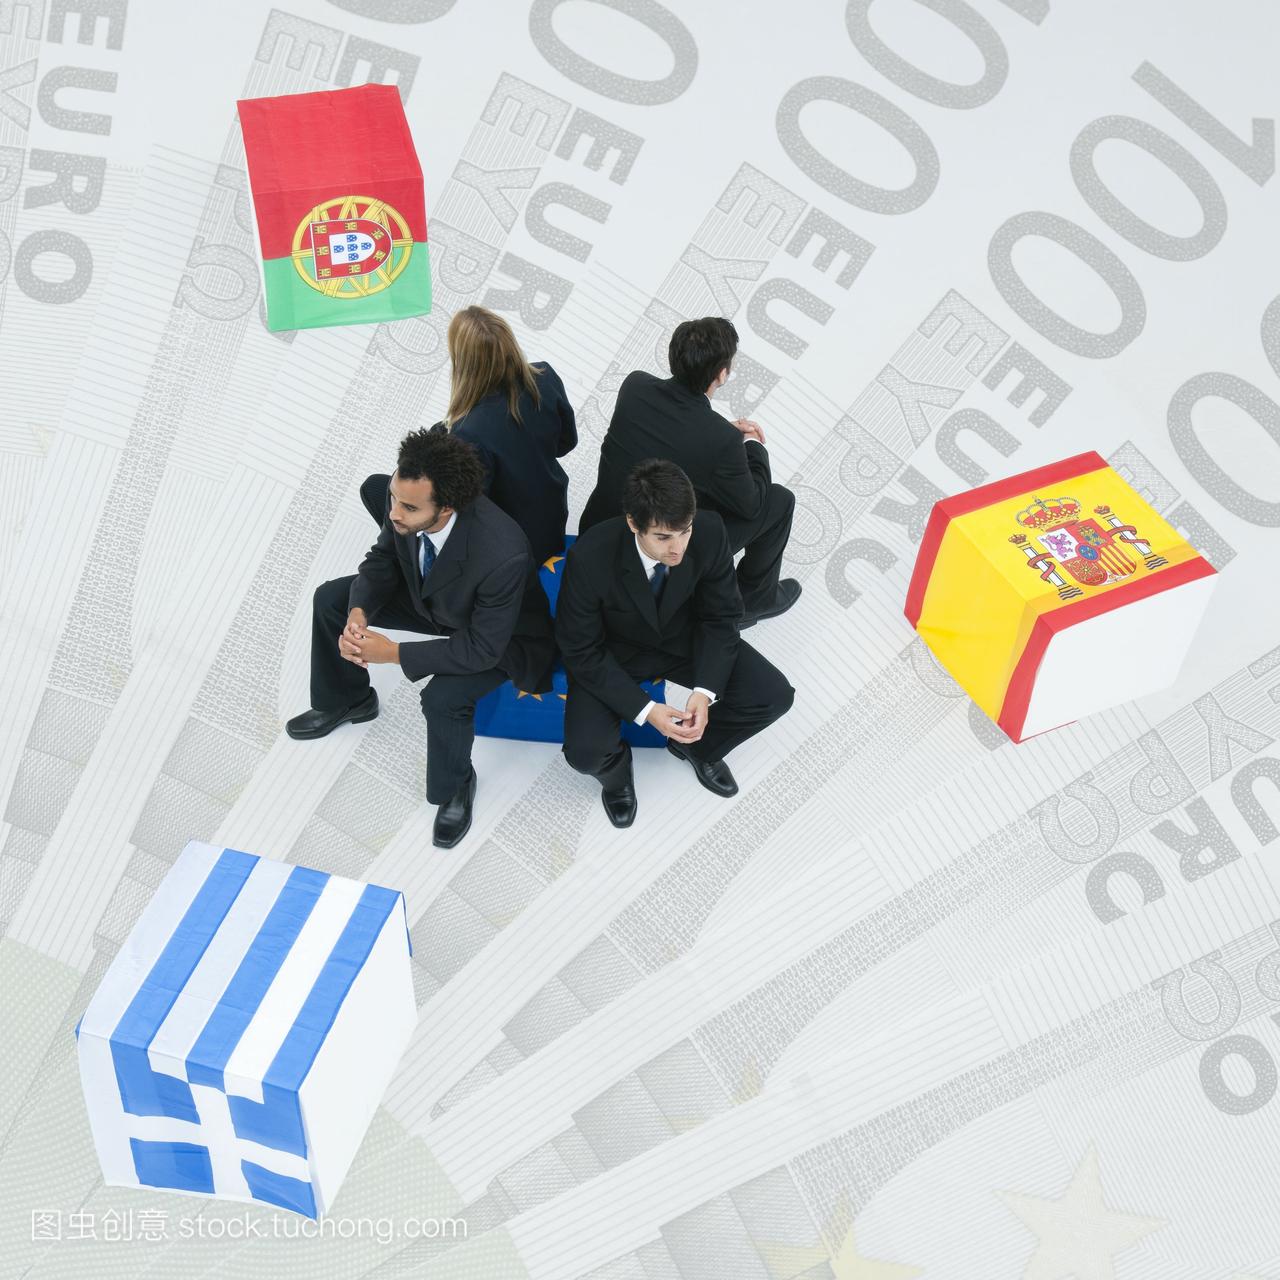 希腊,葡萄牙和西班牙的代表们坐回到欧盟旗帜